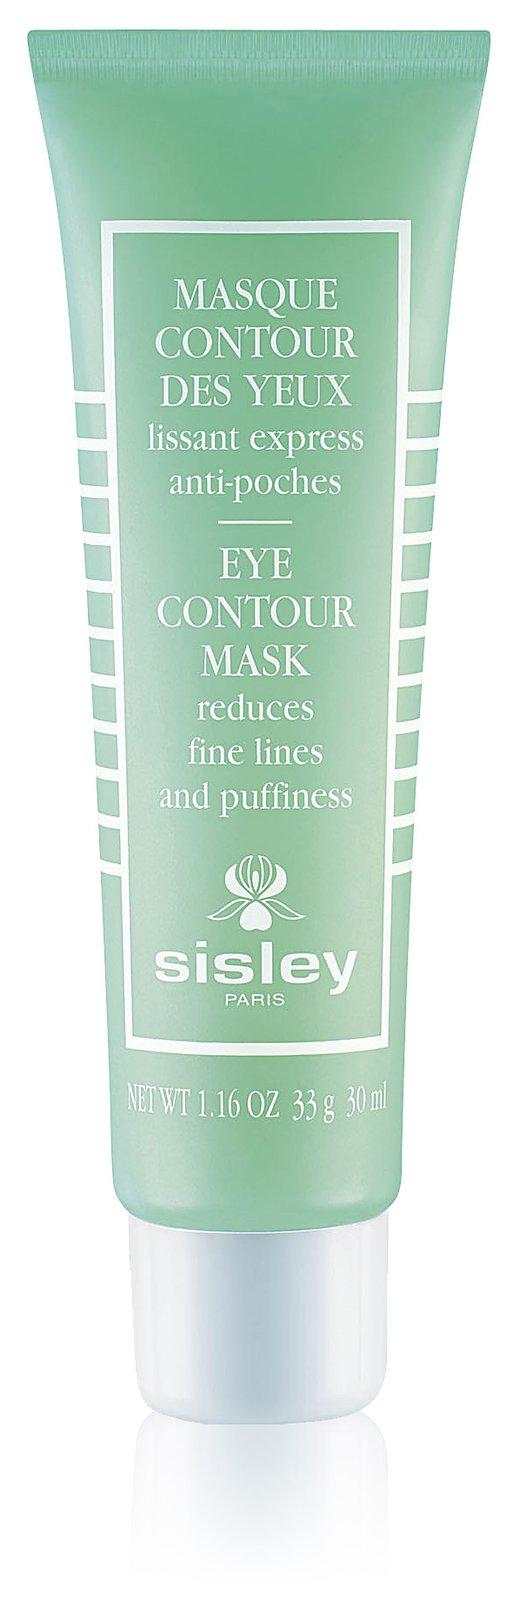 Sisley-paris Eye Contour Mask